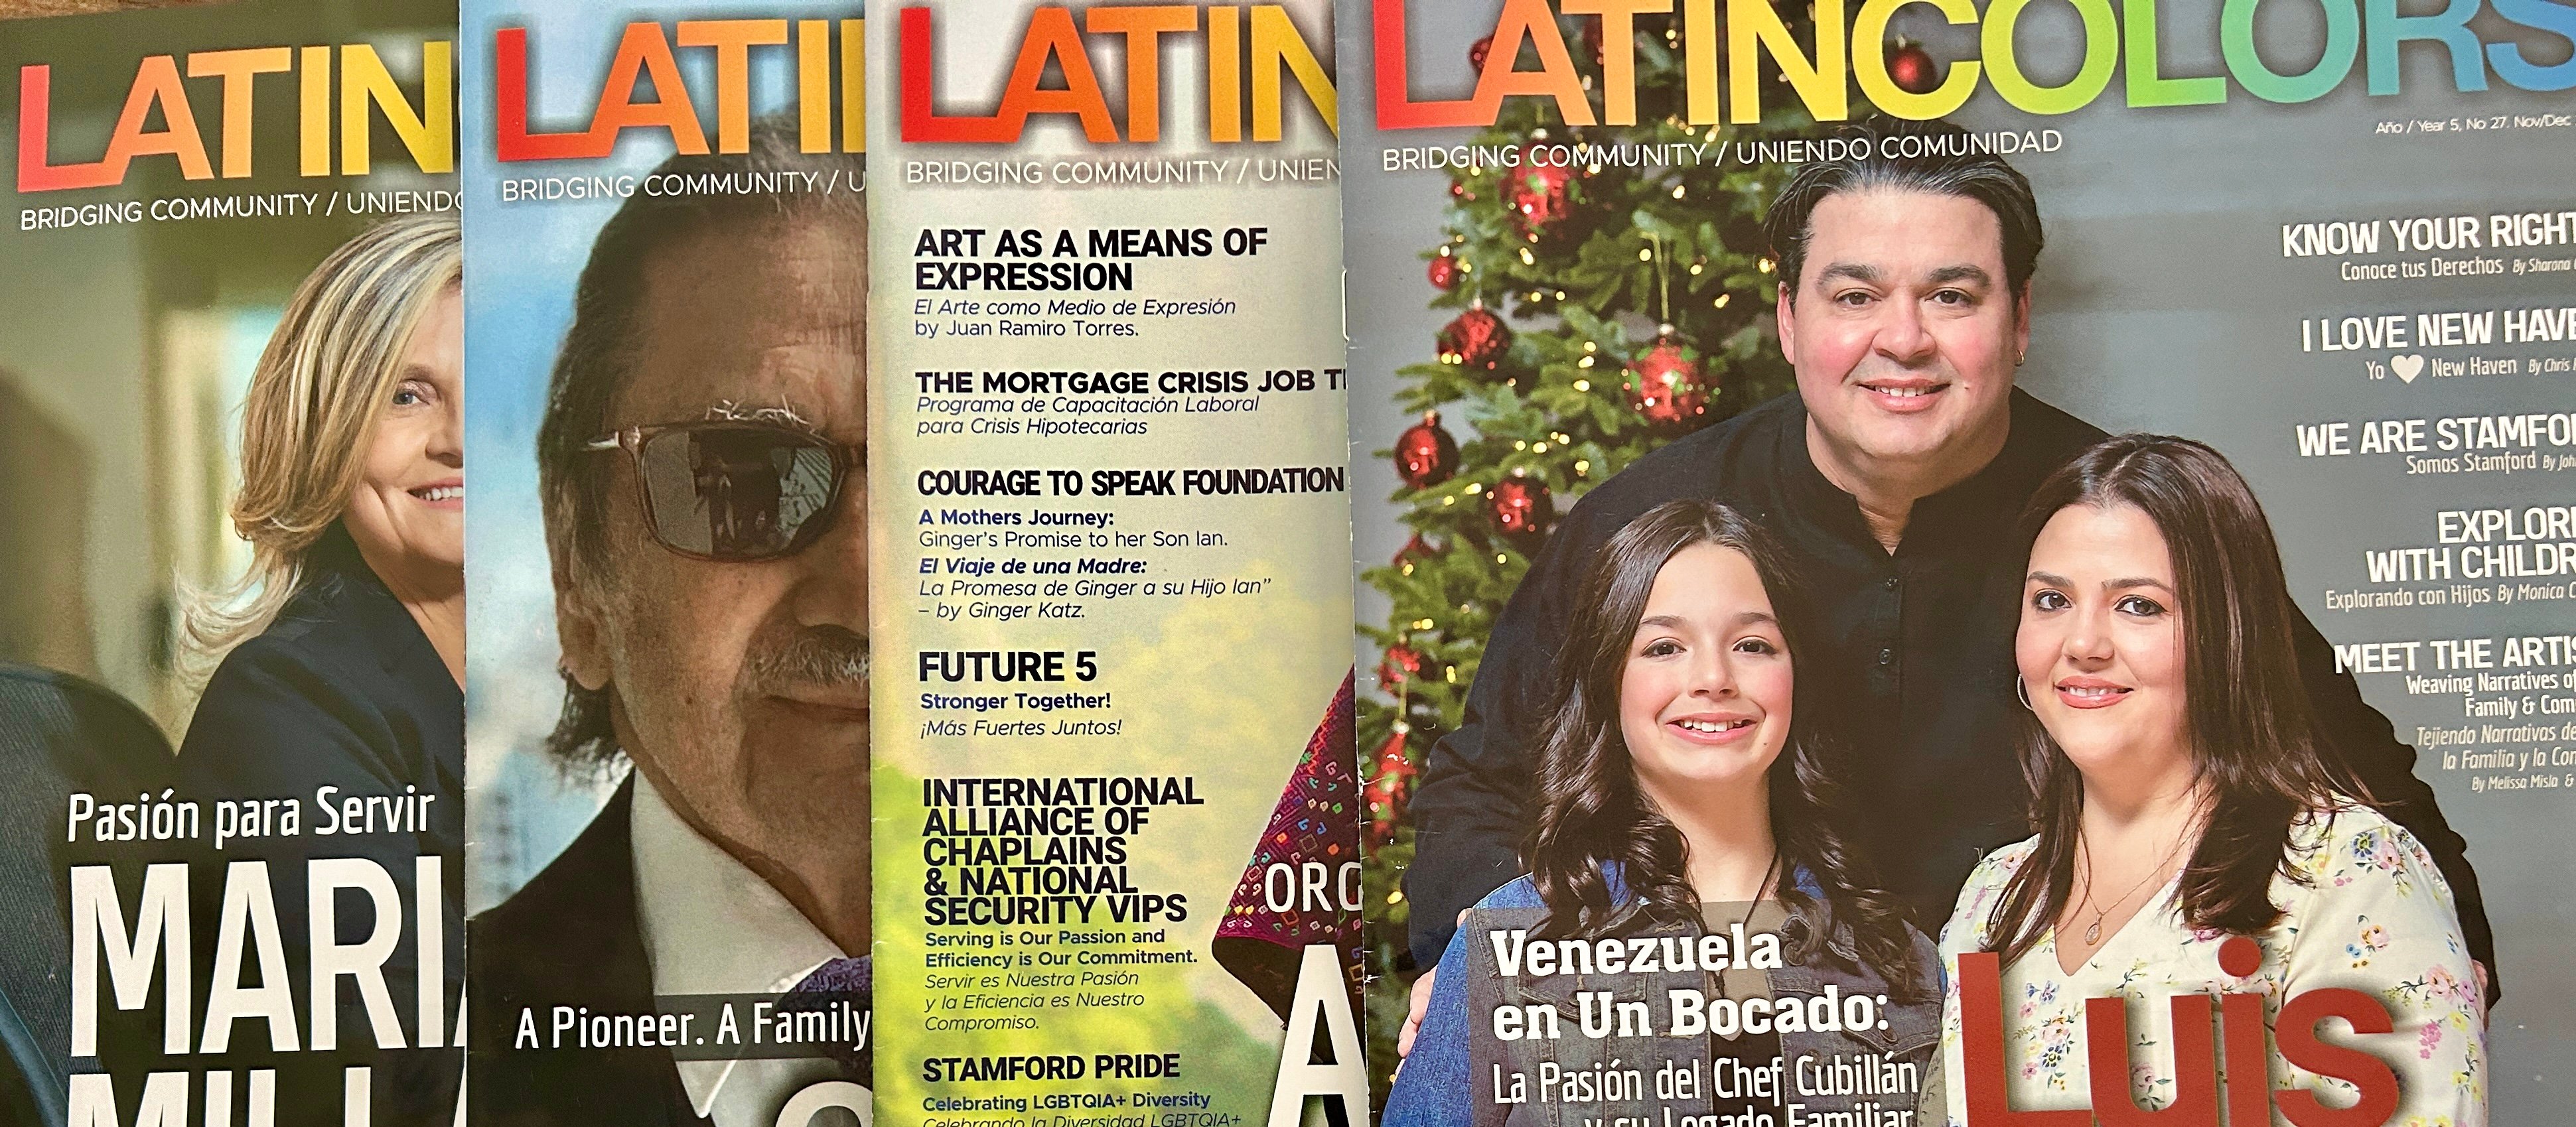 Latincolors Magazine Illuminates, Connects